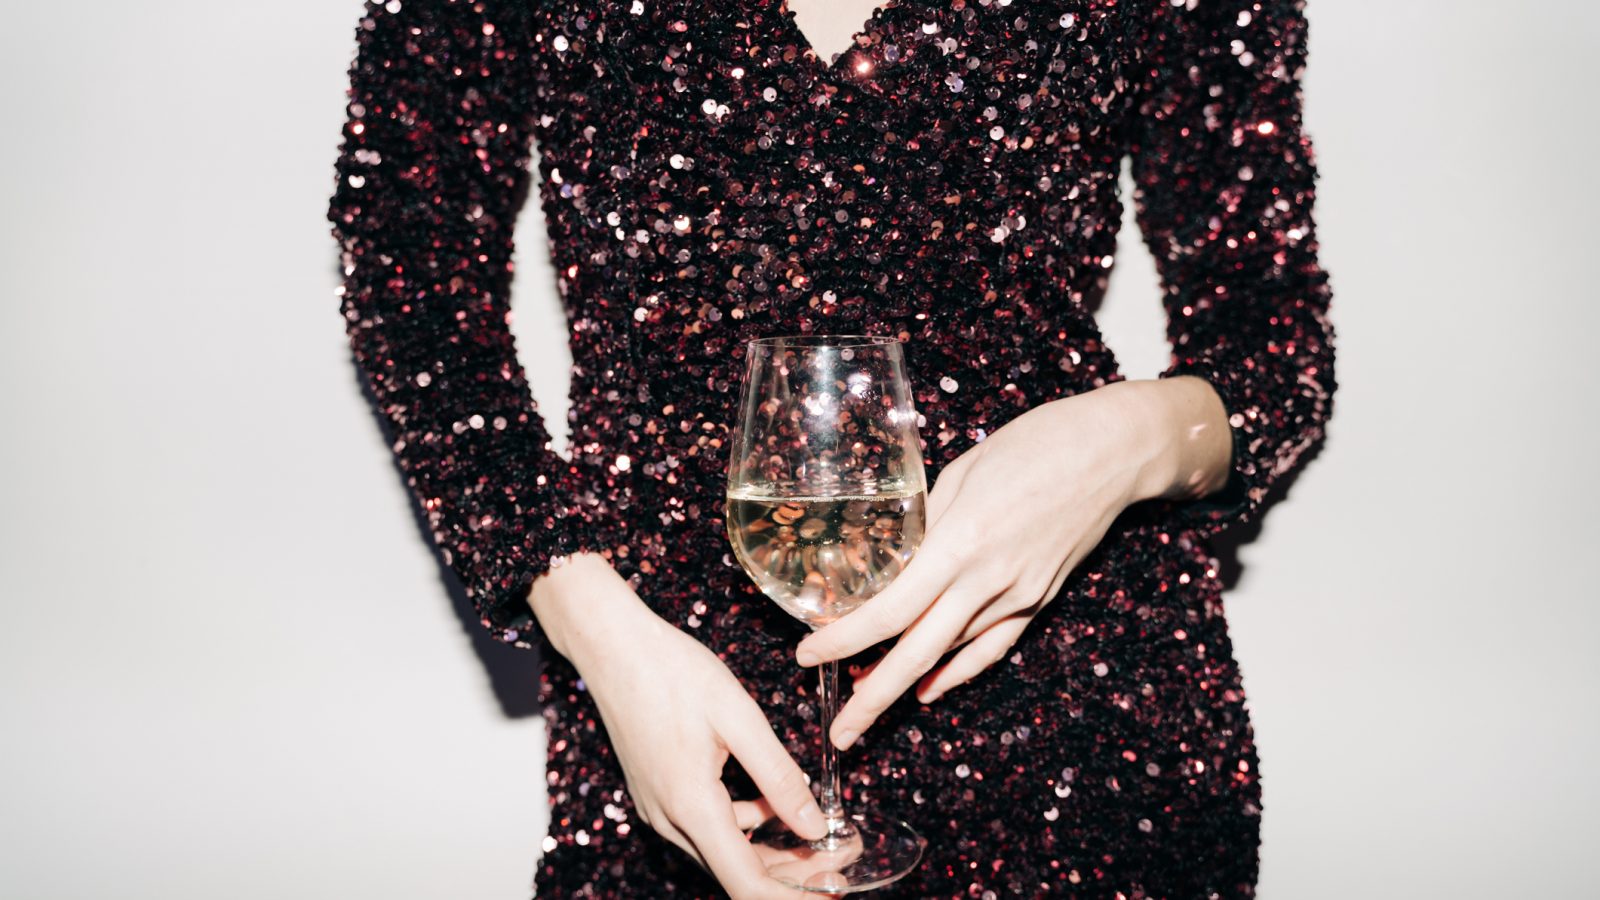 ワイン界の女王ジャンシス・ロビンソンが説く「世界のワインの進化論」 | 高級ワインと安物の差は縮まっている